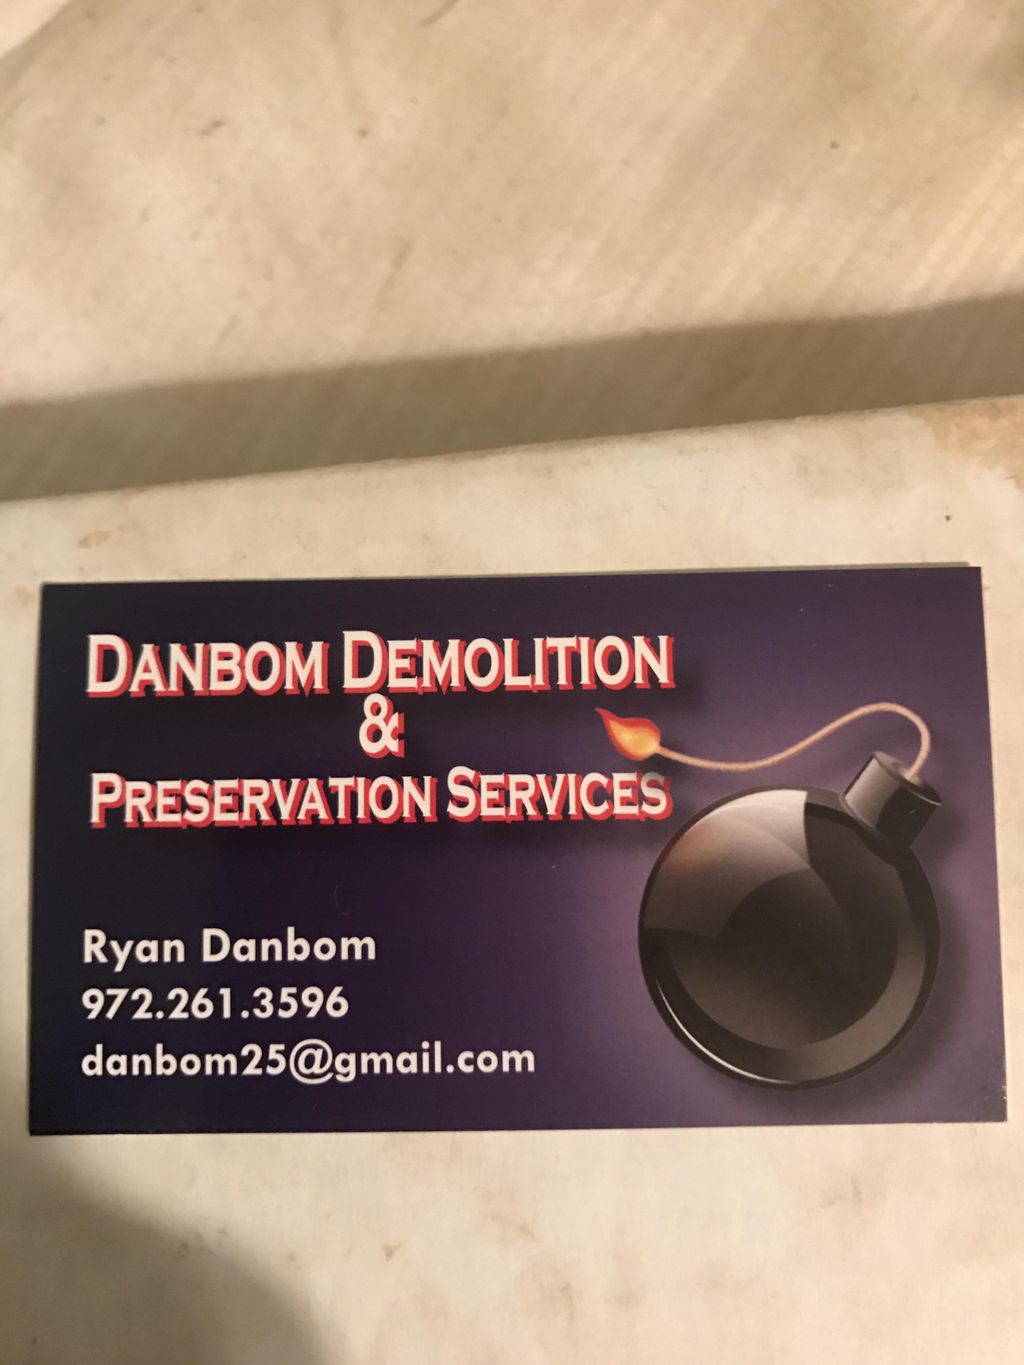 Danbom property preservation services